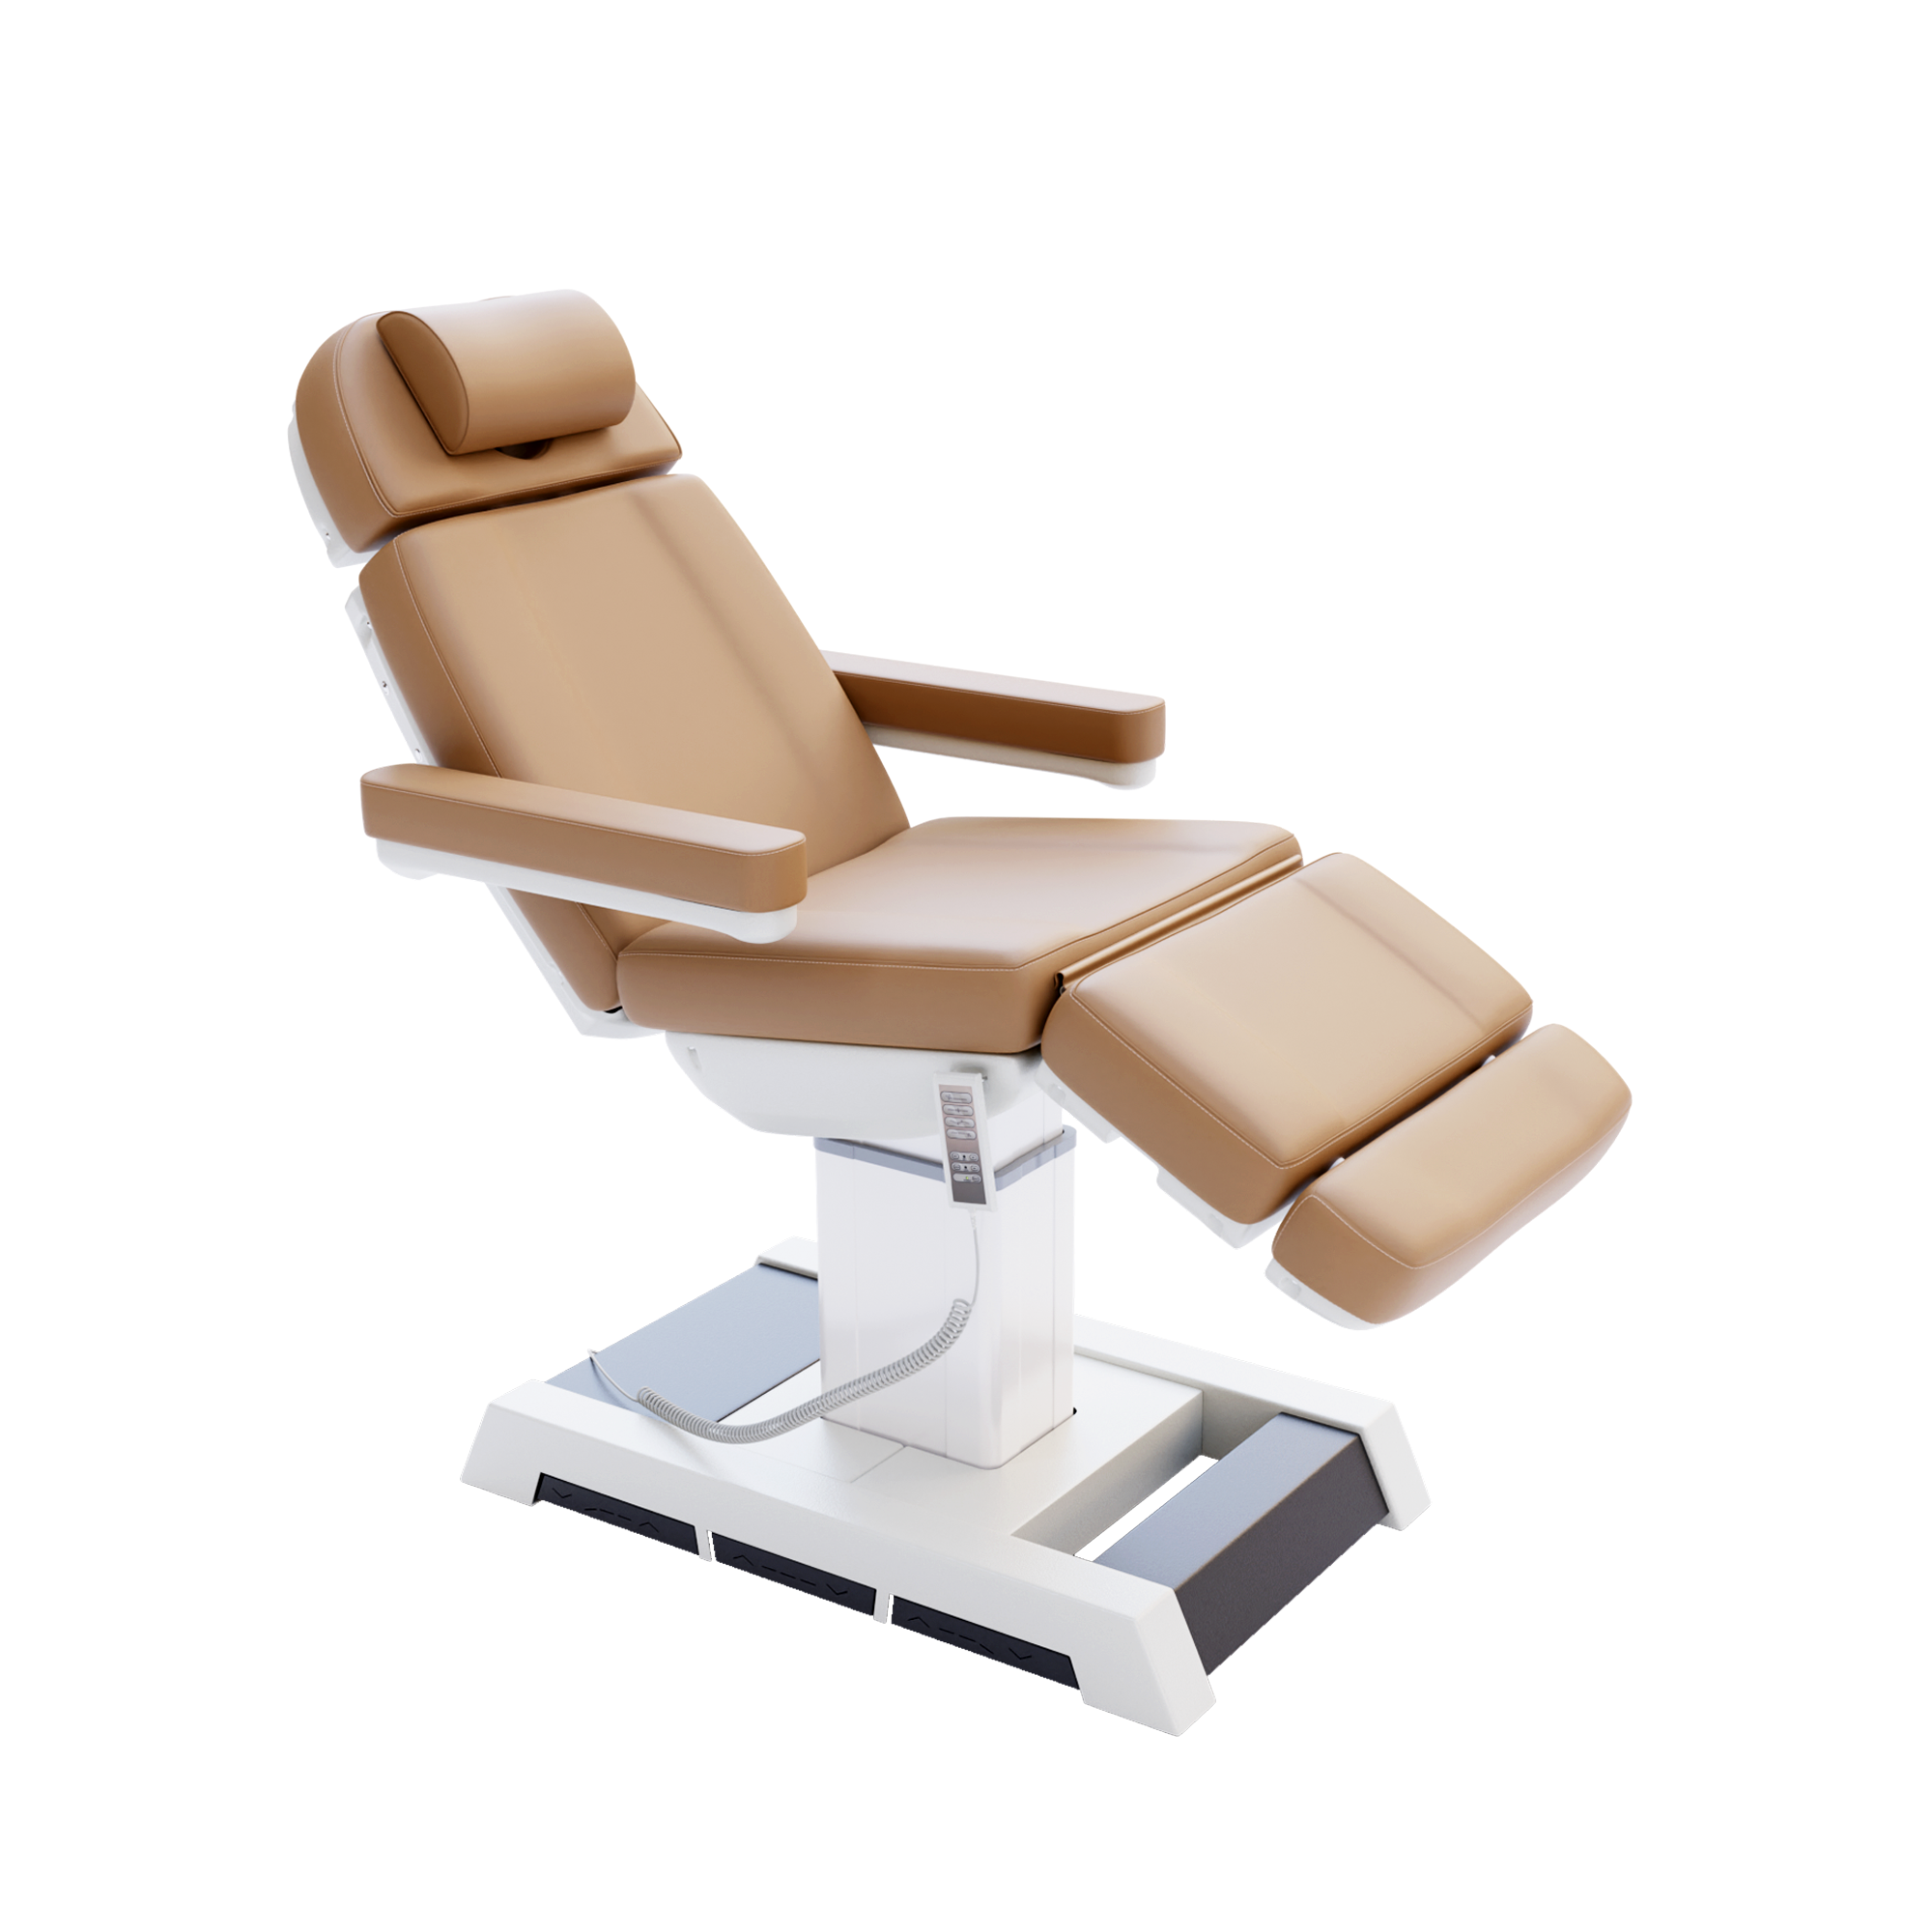 Medical Spa Chair, Medical Spa Treatment Chair